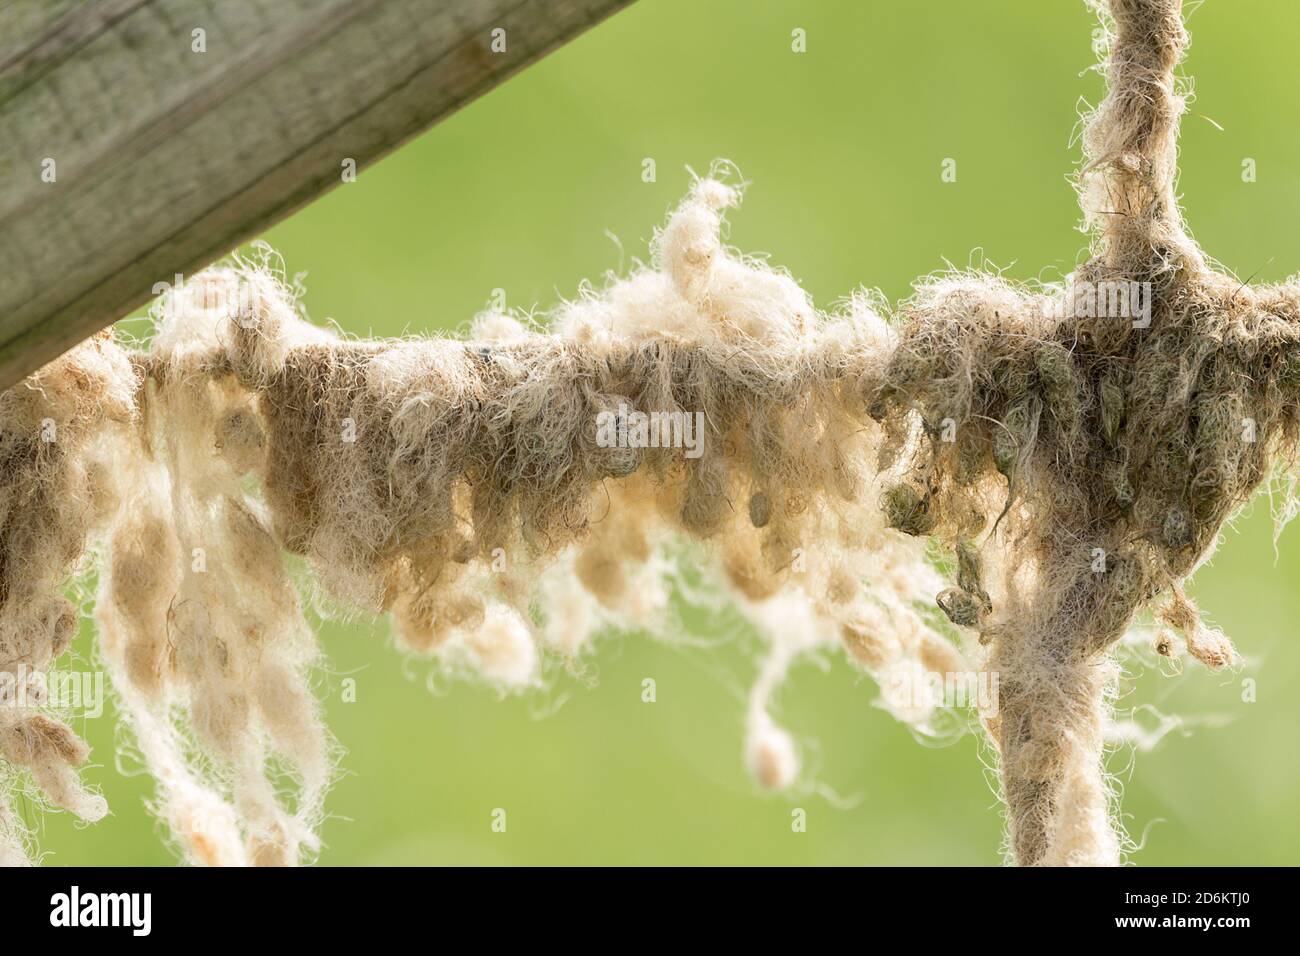 La laine de mouton sur le treillis métallique s'emmêle et emmêle les touffes de formation. La laine volée par le vent ou le frottement des moutons contre les clôtures accumule des dépôts. Banque D'Images